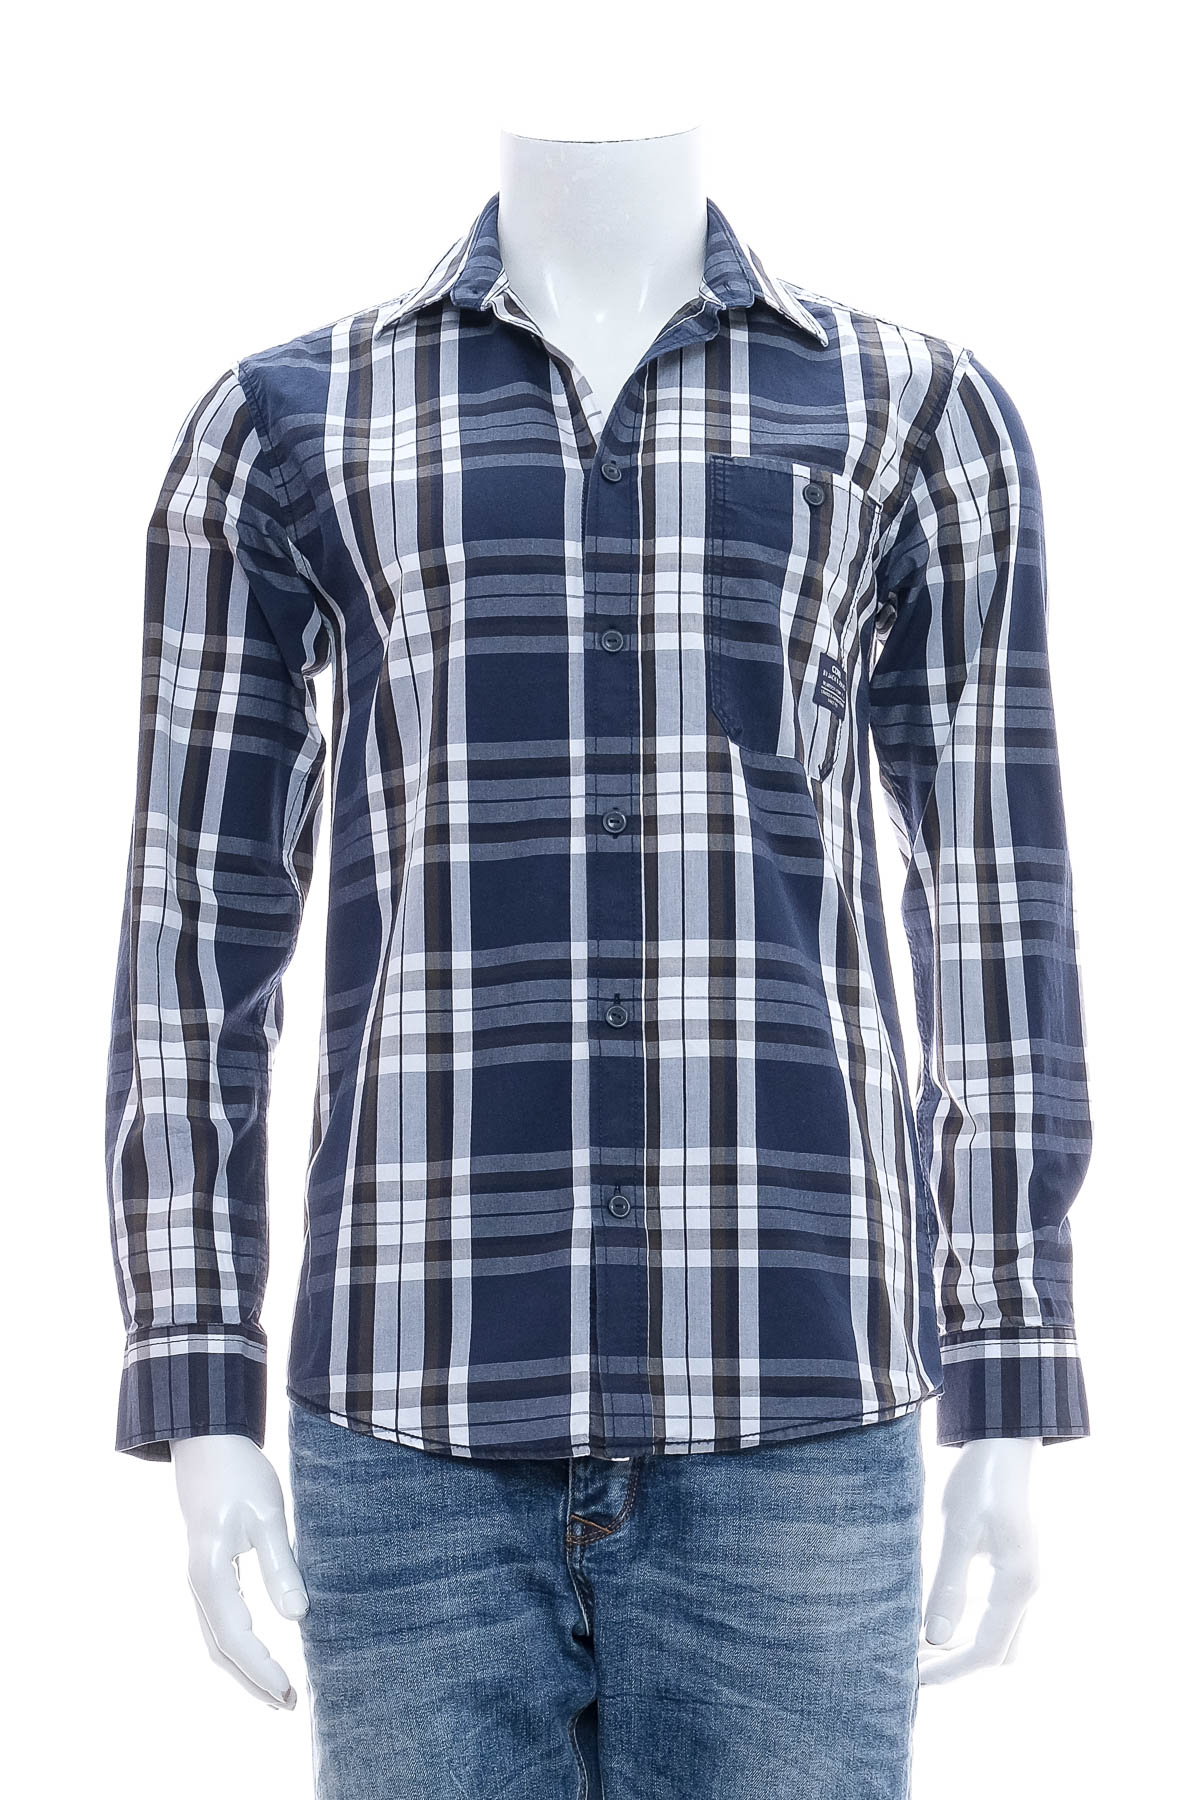 Ανδρικό πουκάμισο - CORE by Jack & Jones - 0